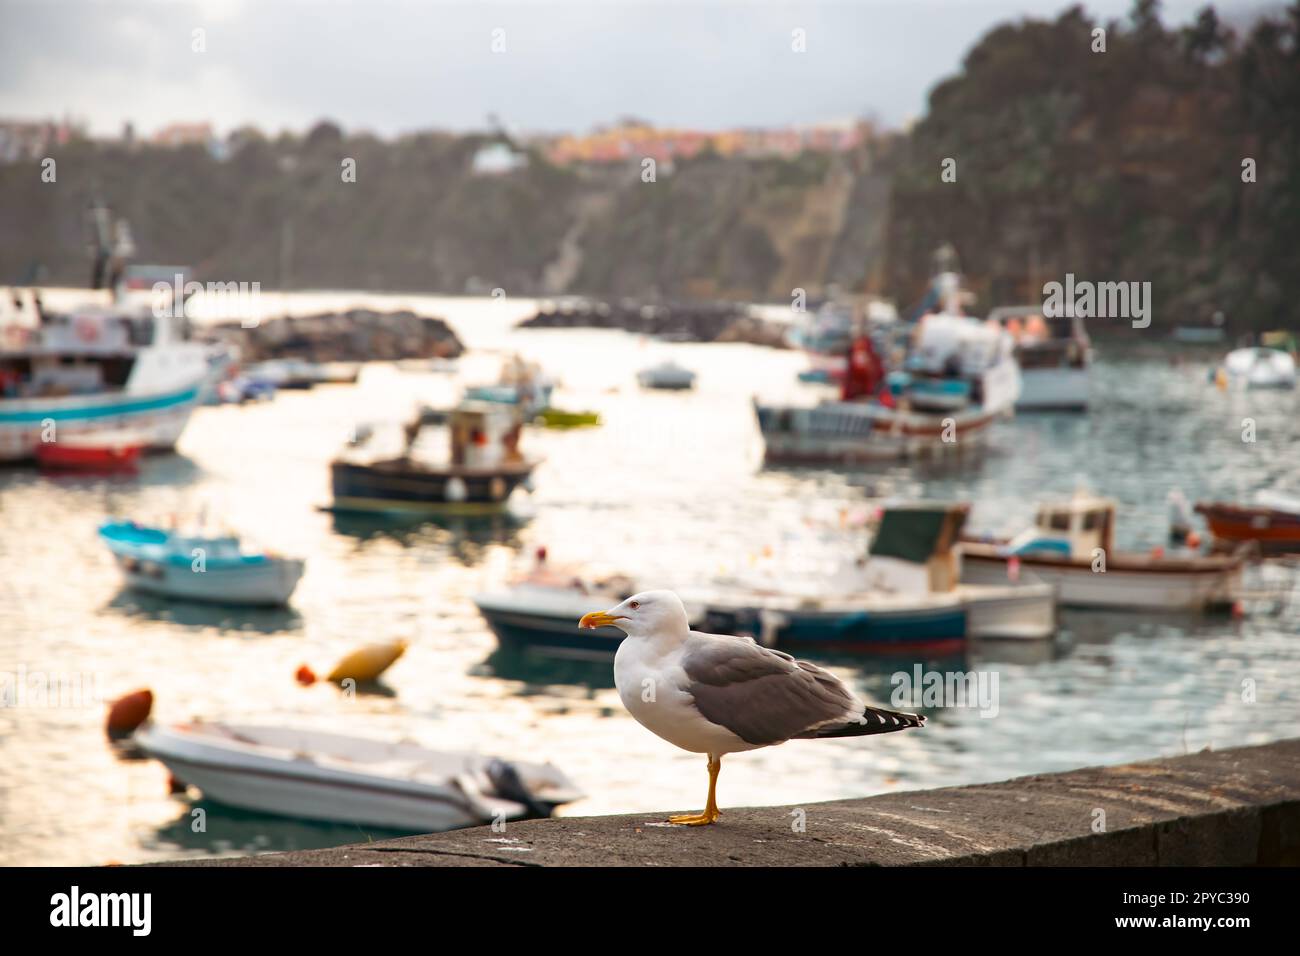 Bellissimo villaggio di pescatori, Marina Corricella sull'isola di Procida, Golfo di Napoli, Italia. Foto Stock